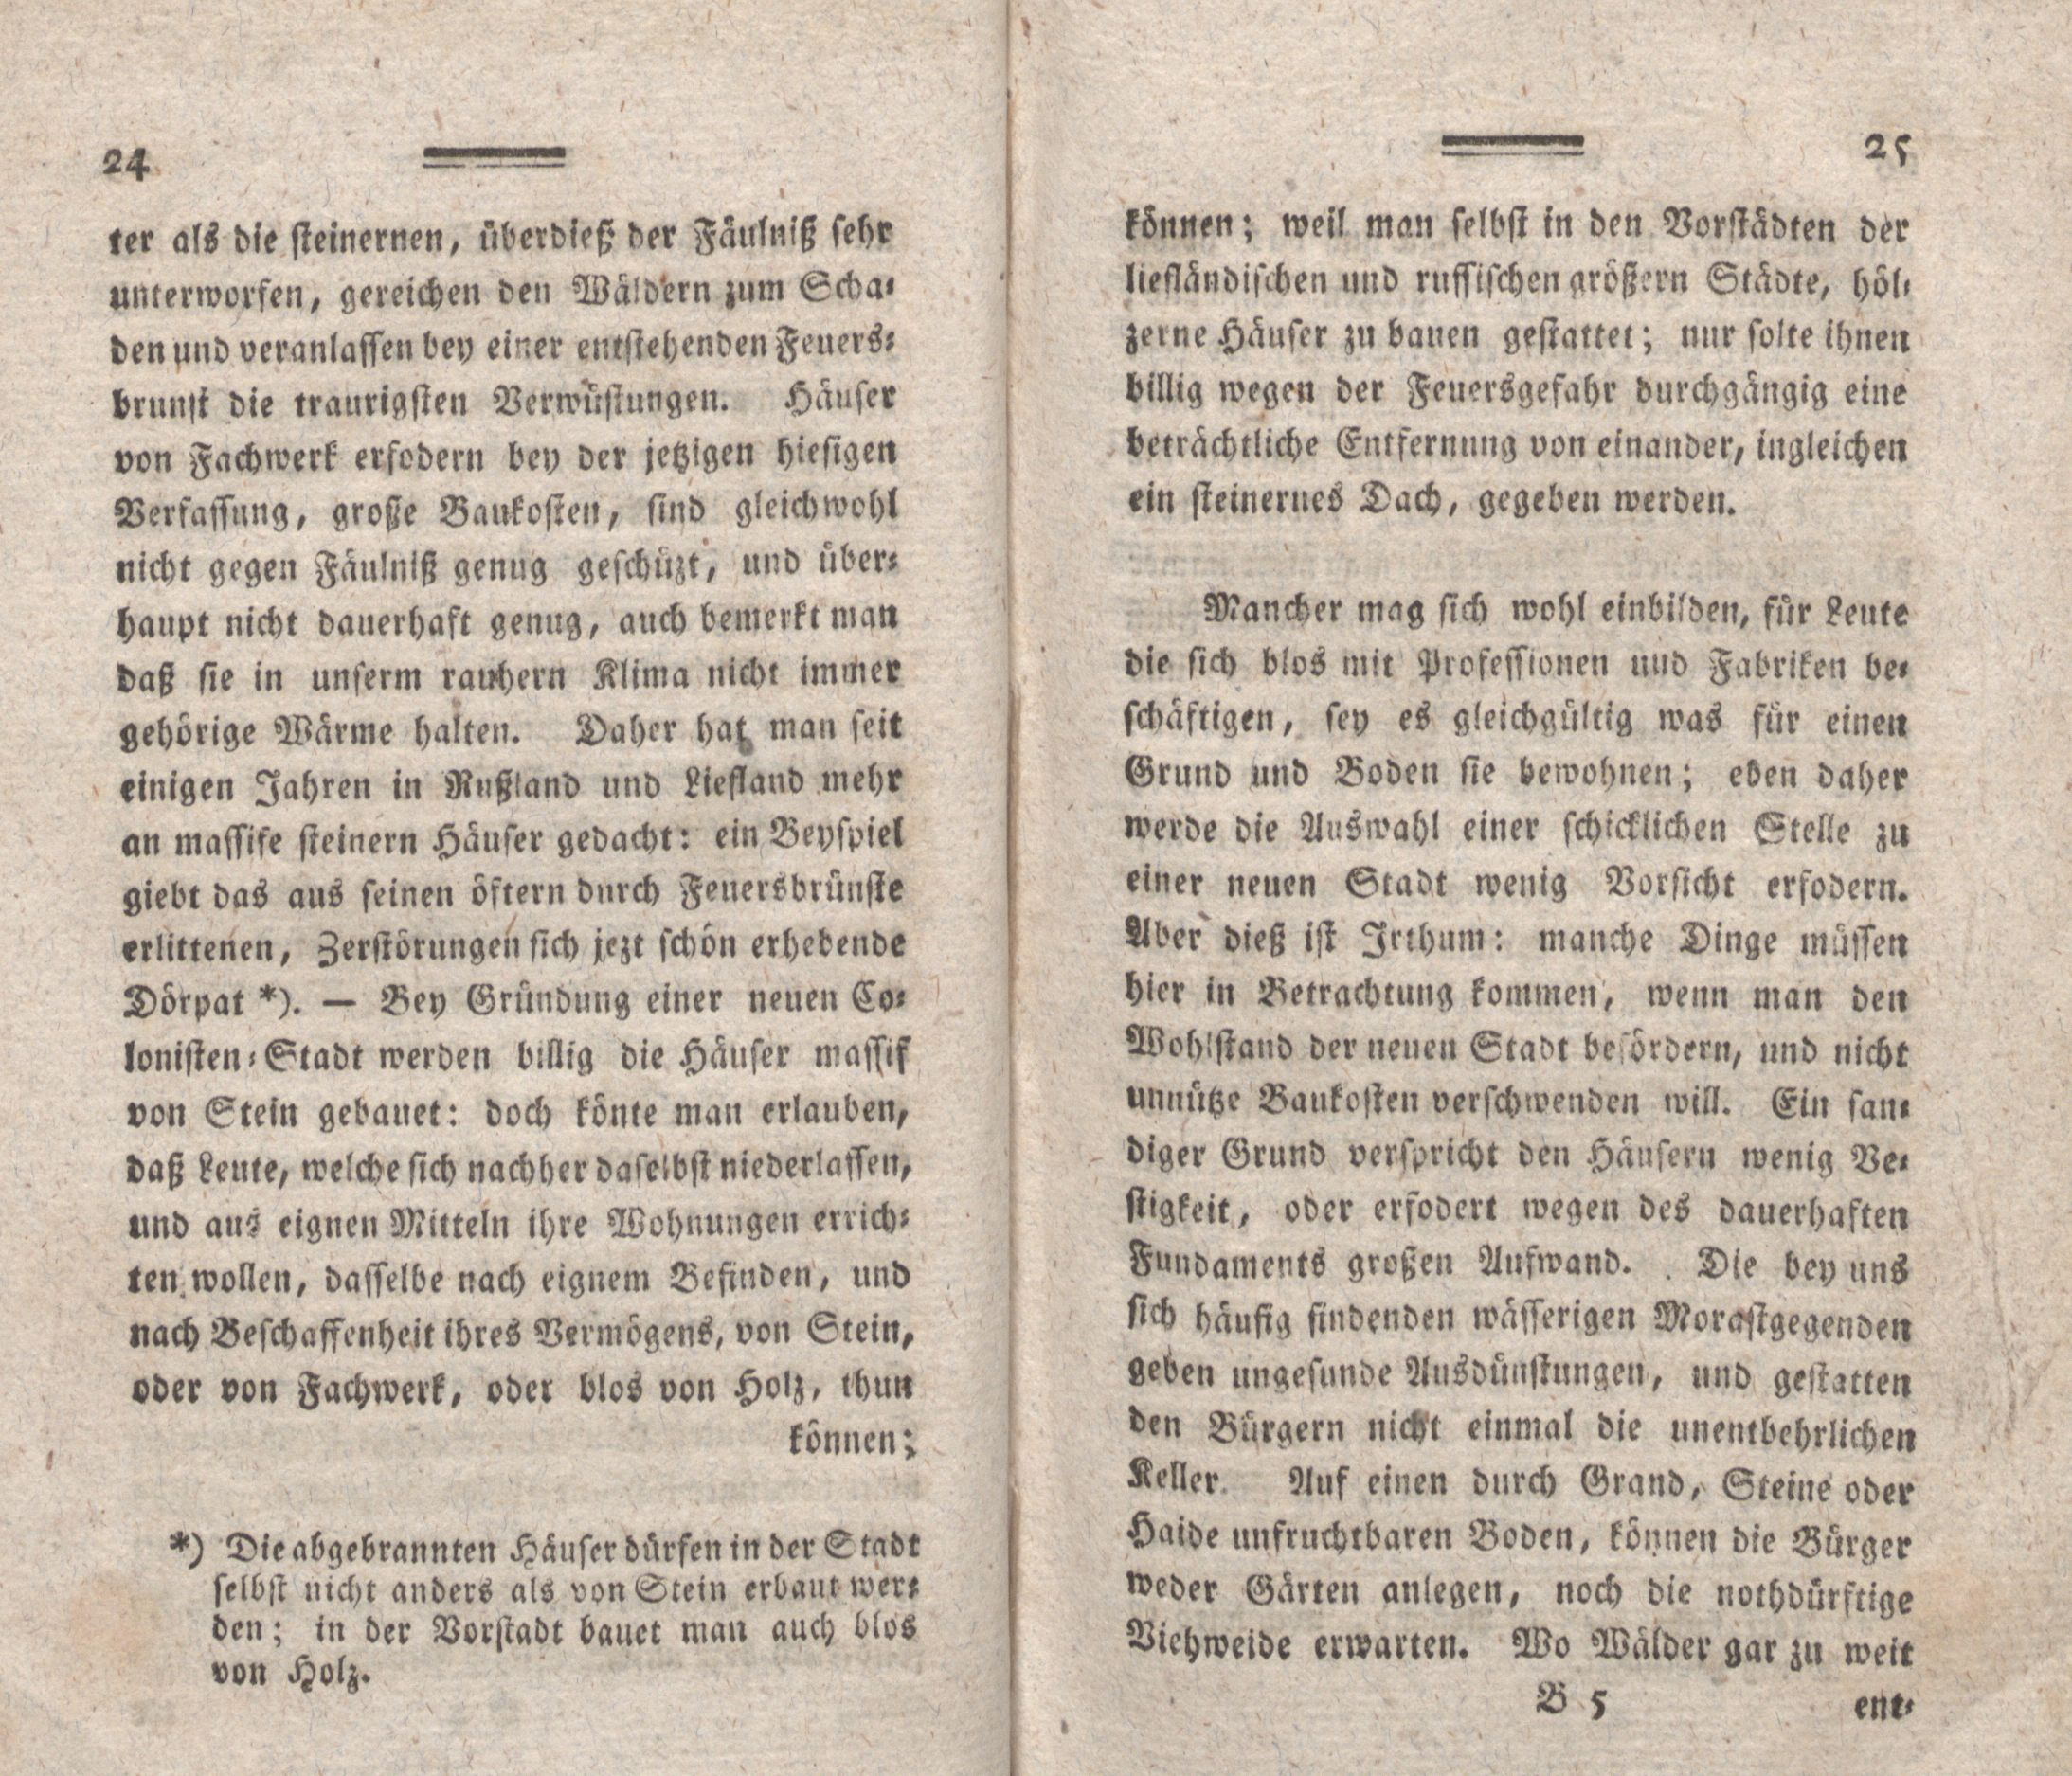 Nordische Miscellaneen [08] (1784) | 13. (24-25) Main body of text